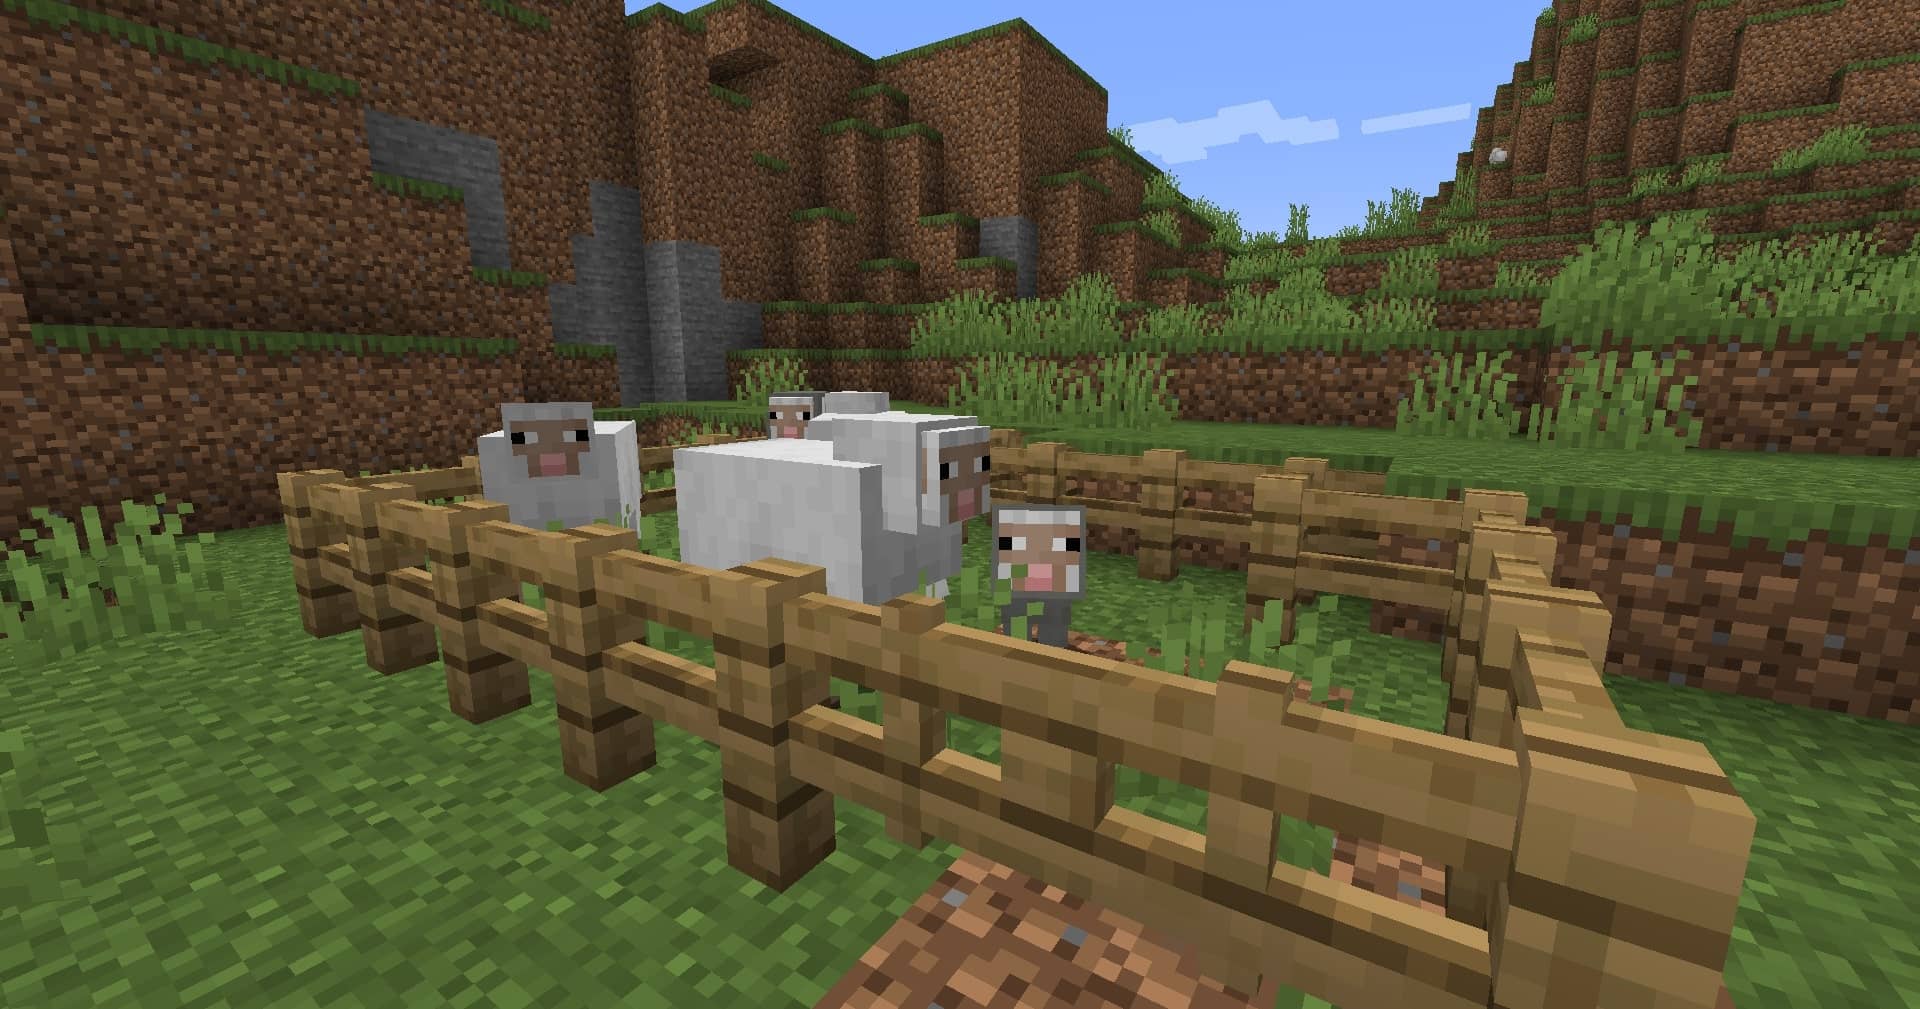 Chăn nuôi một đàn cừu bên trong hàng rào gỗ